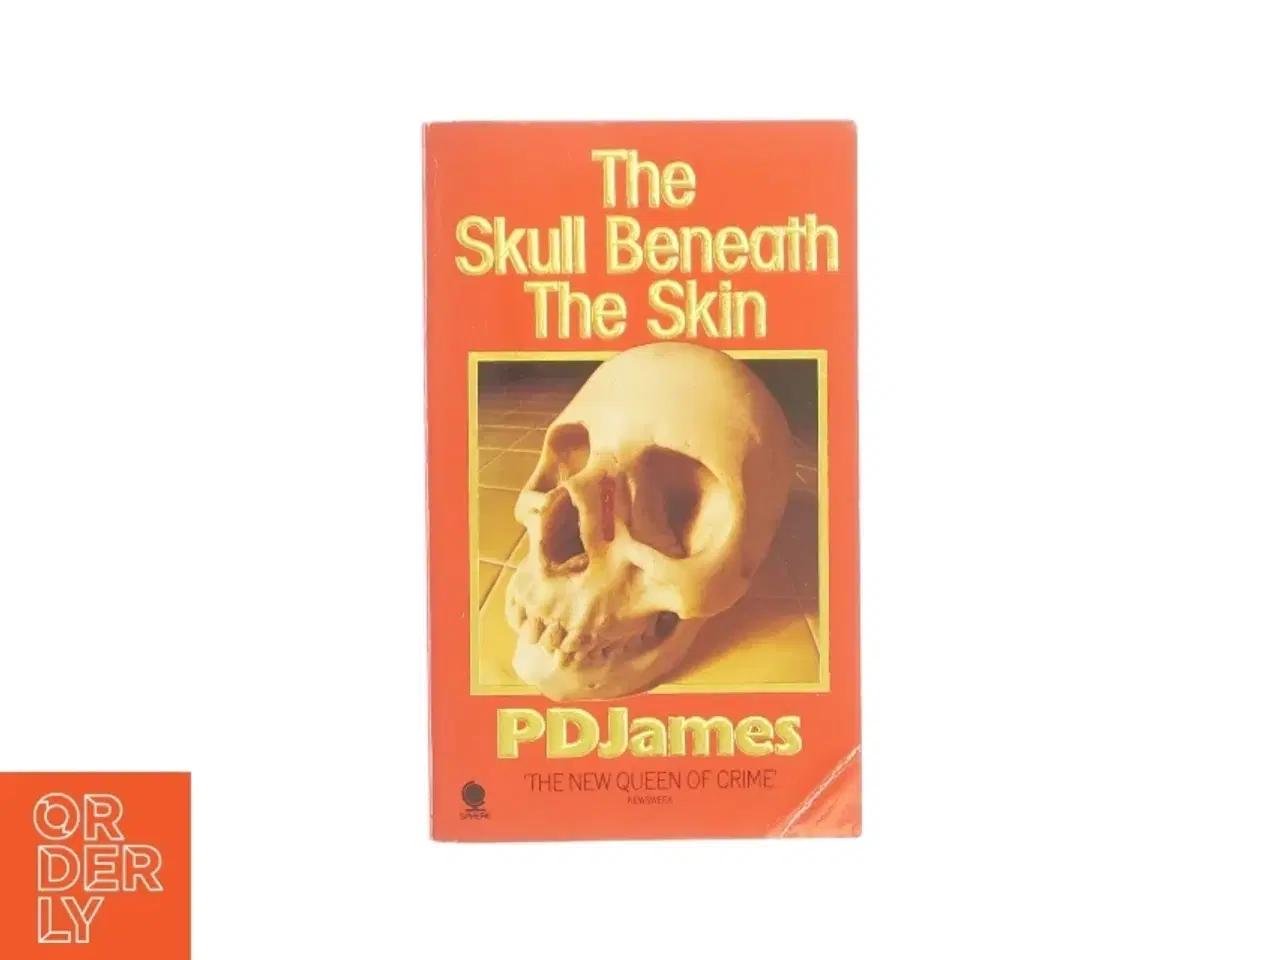 Billede 1 - The skull beneath the skin af P. D. James (bog)